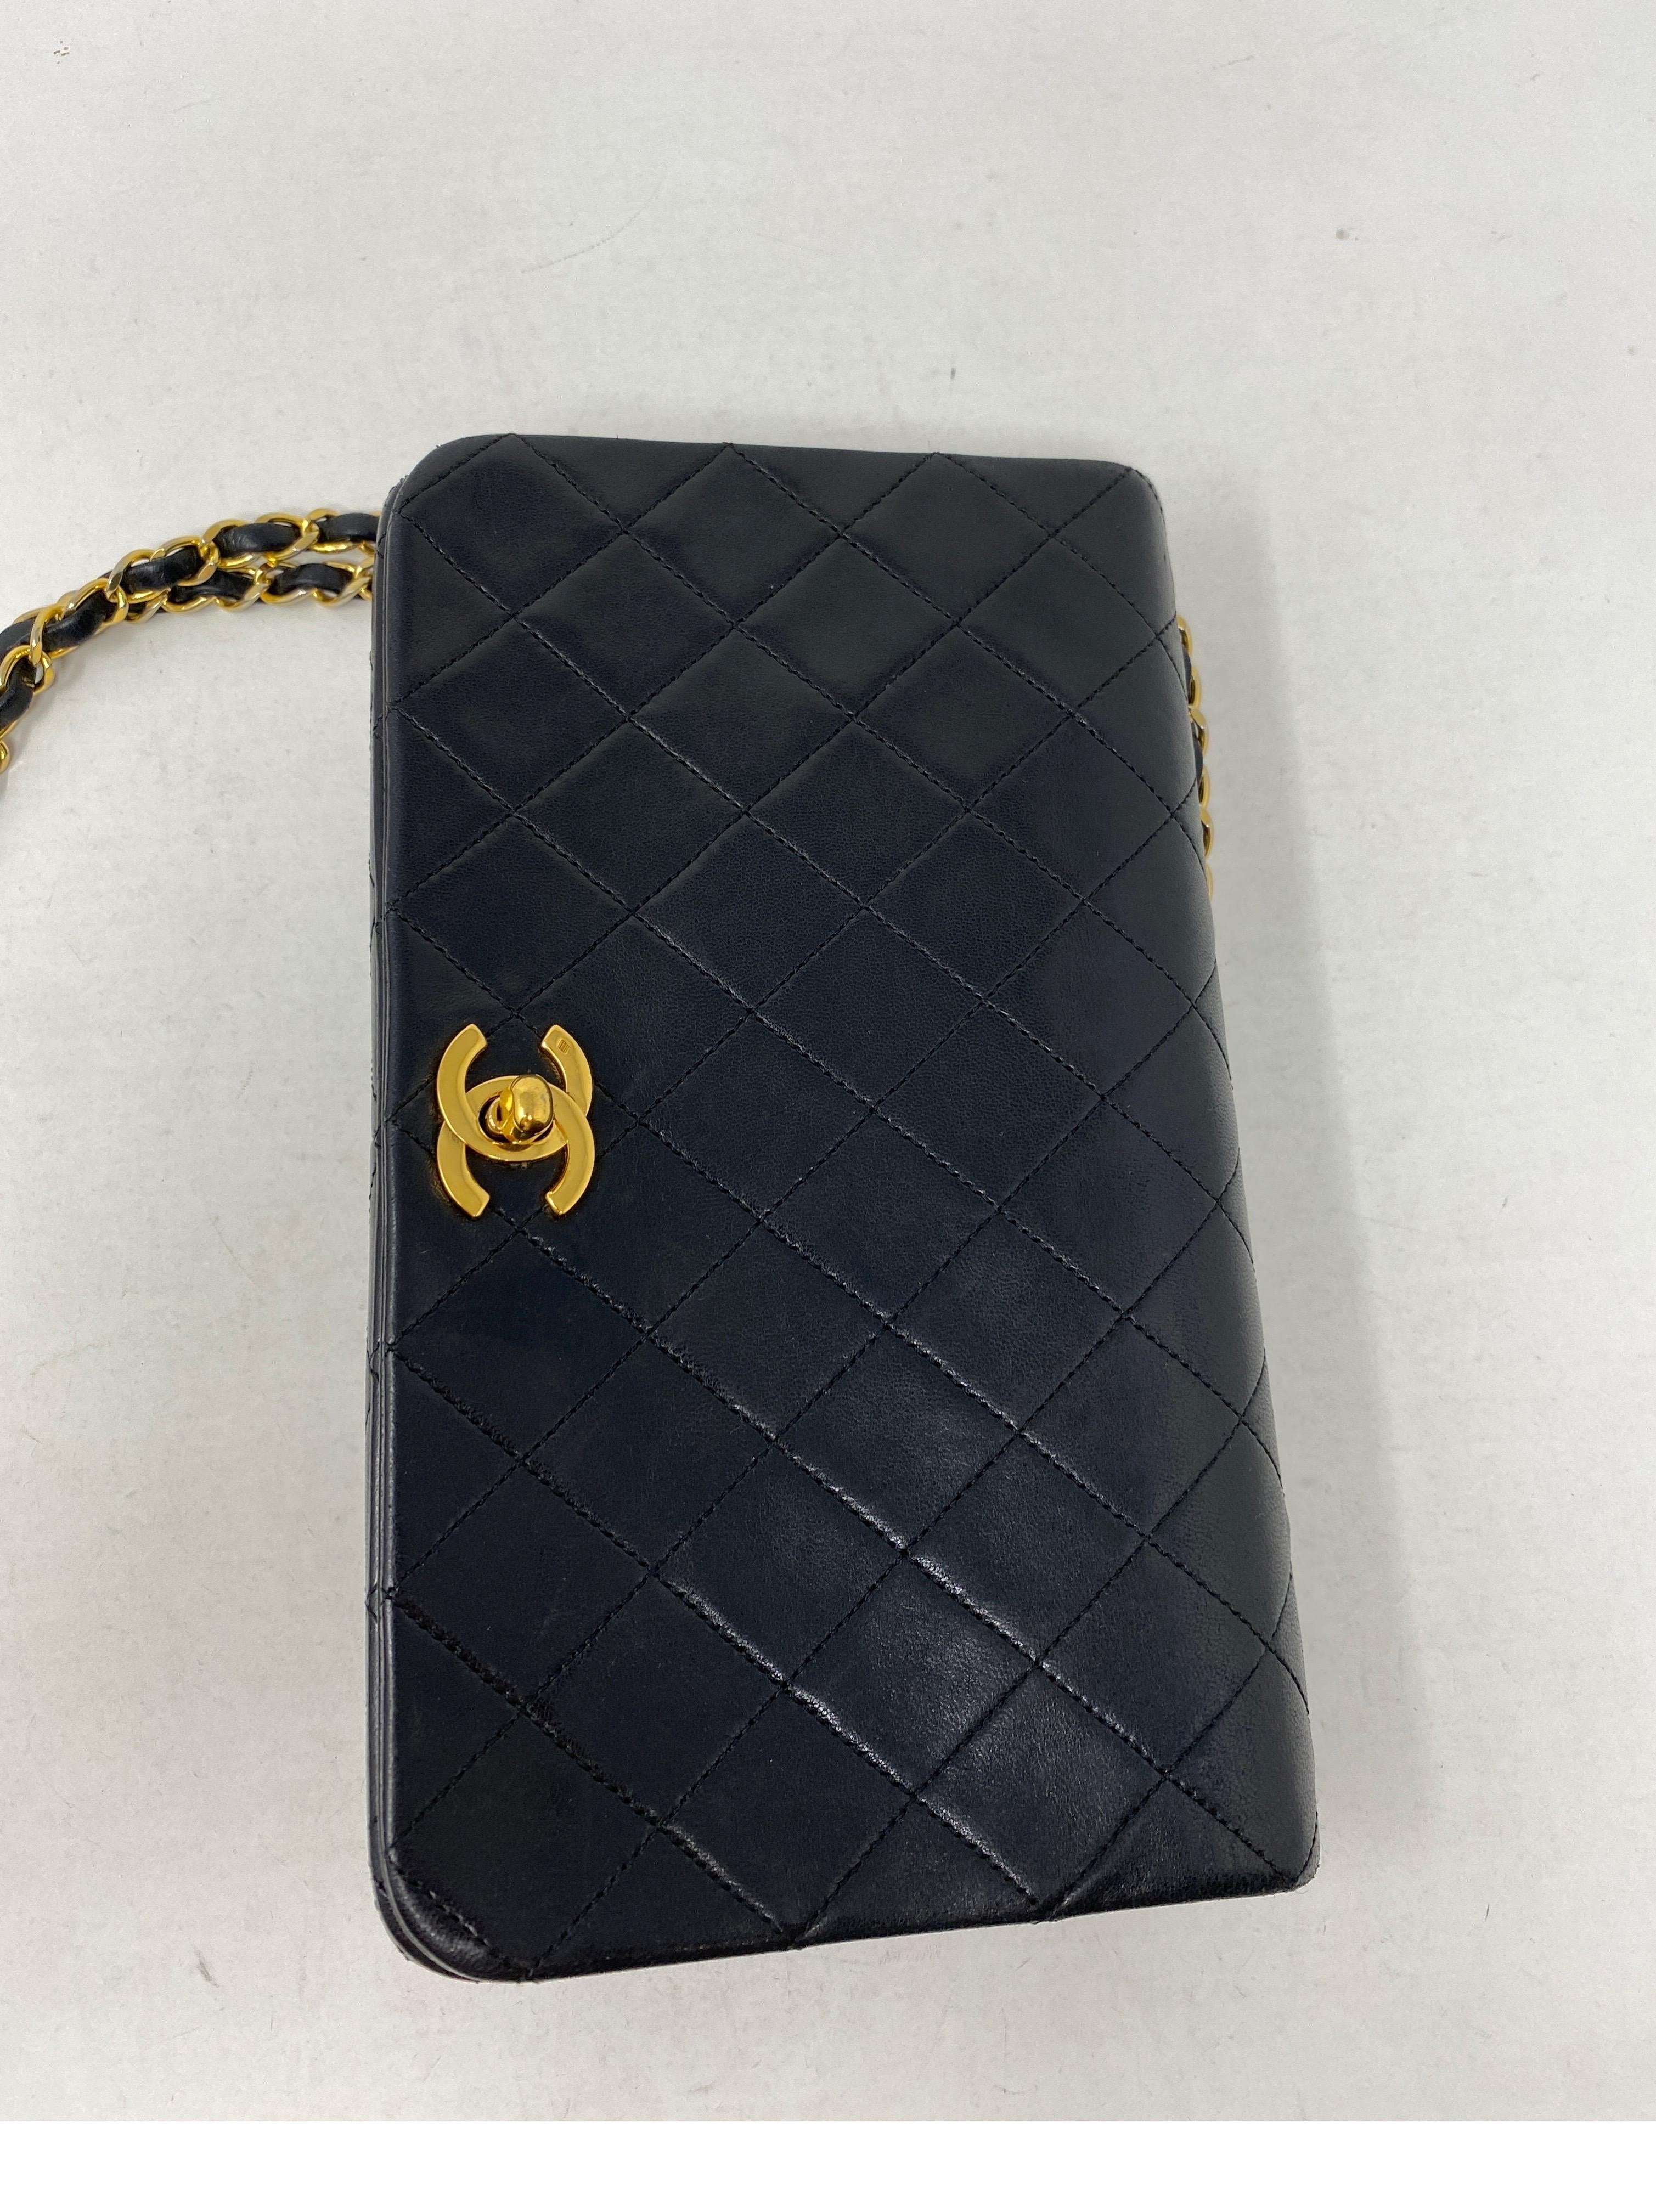 Chanel Vintage Black Leather Bag  5